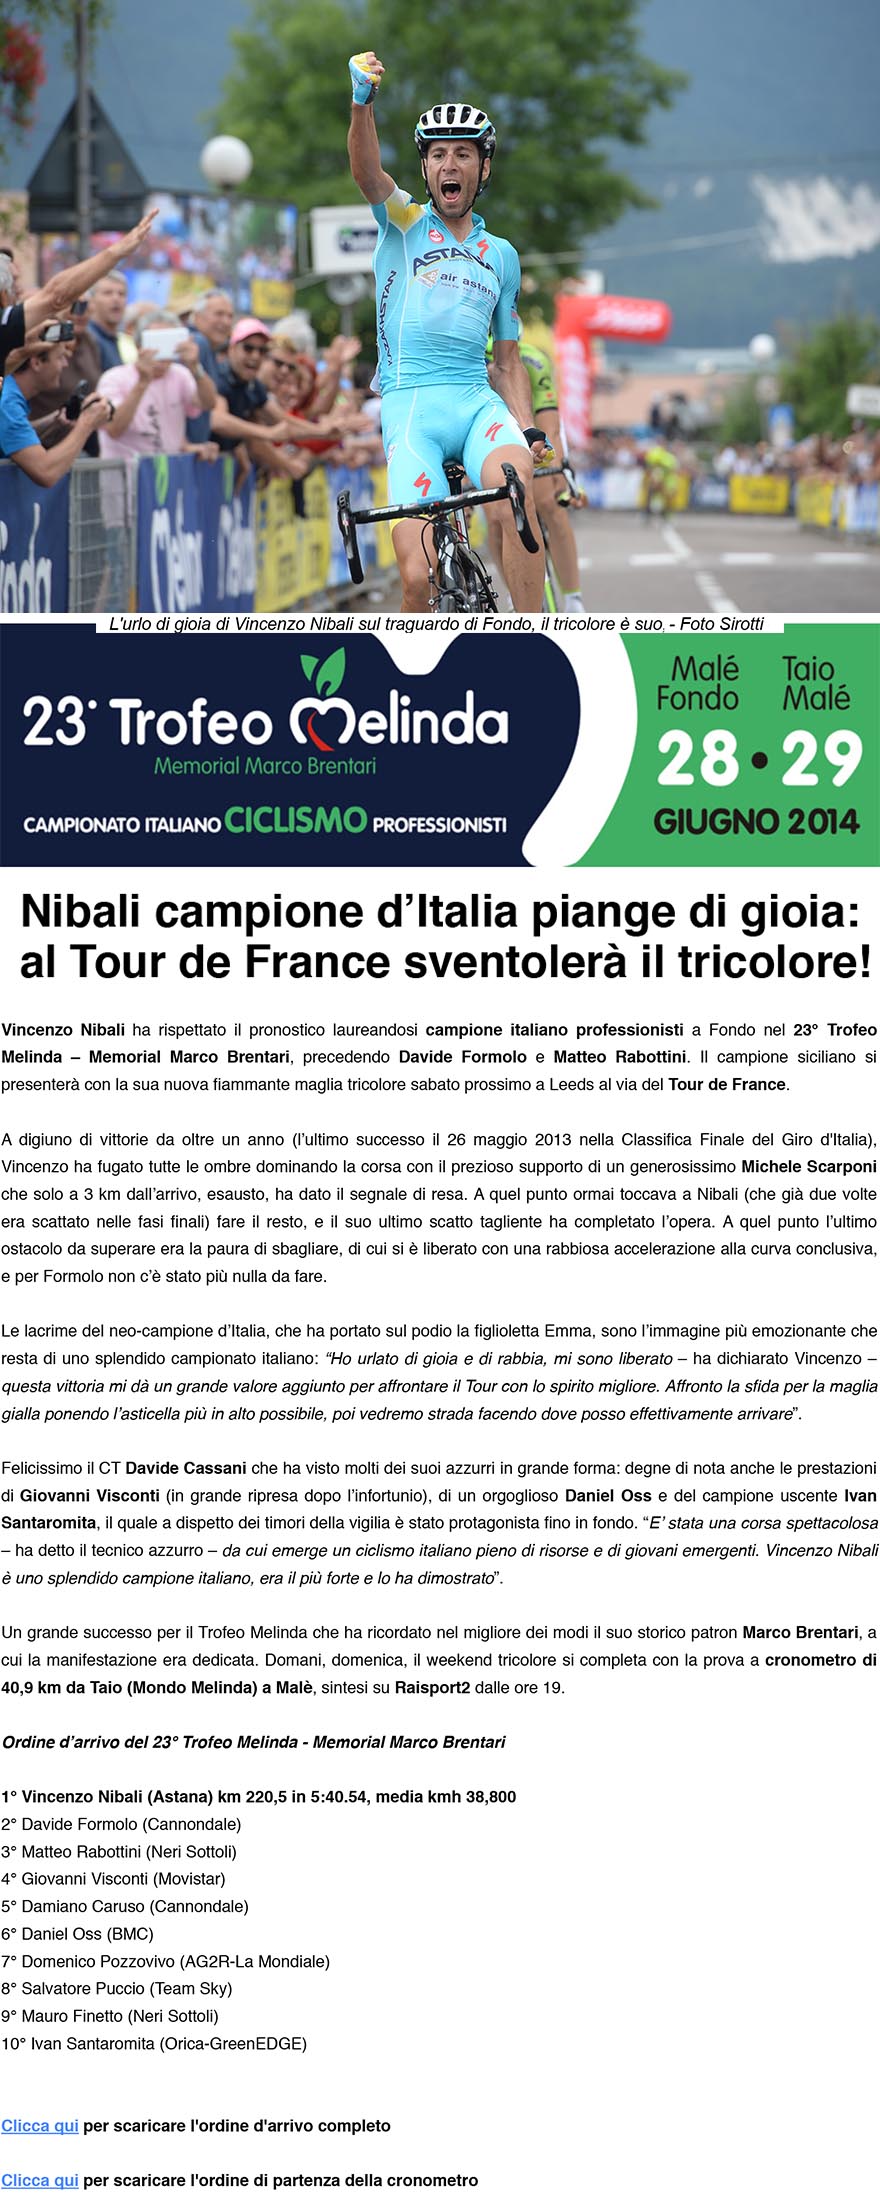 Vincenzo Nibali conquista il Campionato Italiano /Trofeo Melinda